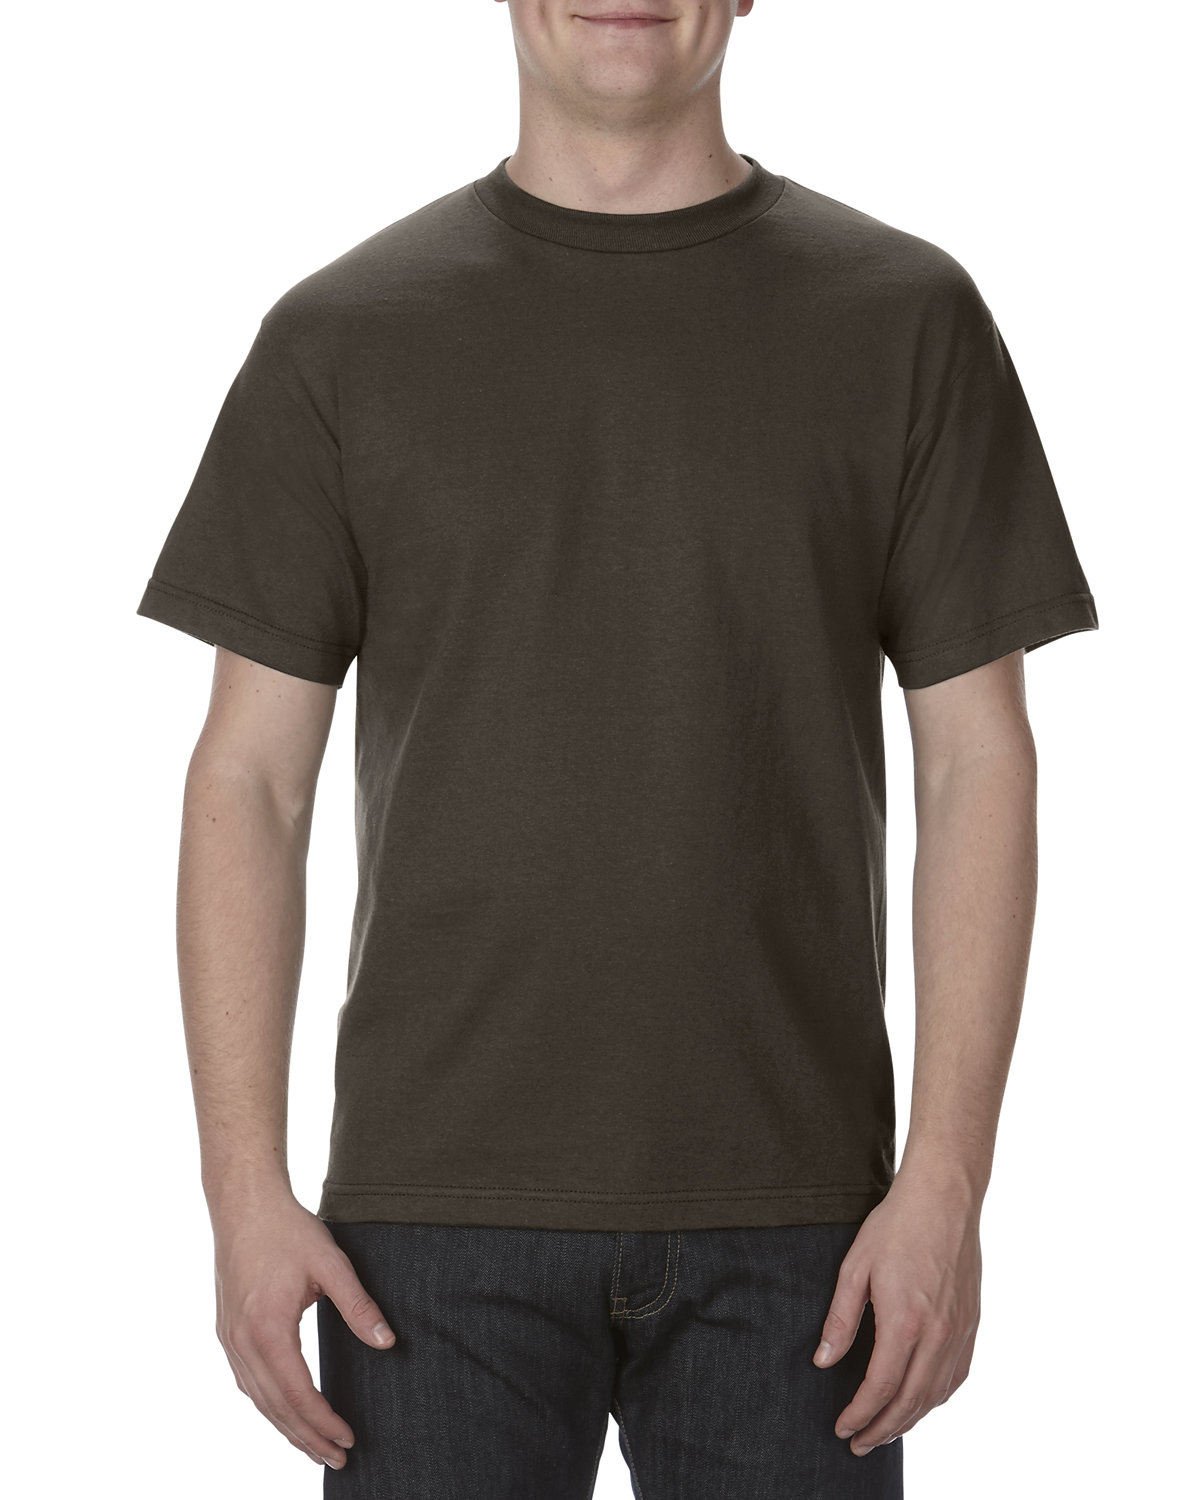 Alstyle Adult 6.0 oz., 100% Cotton T-Shirt DARK CHOCOLATE 